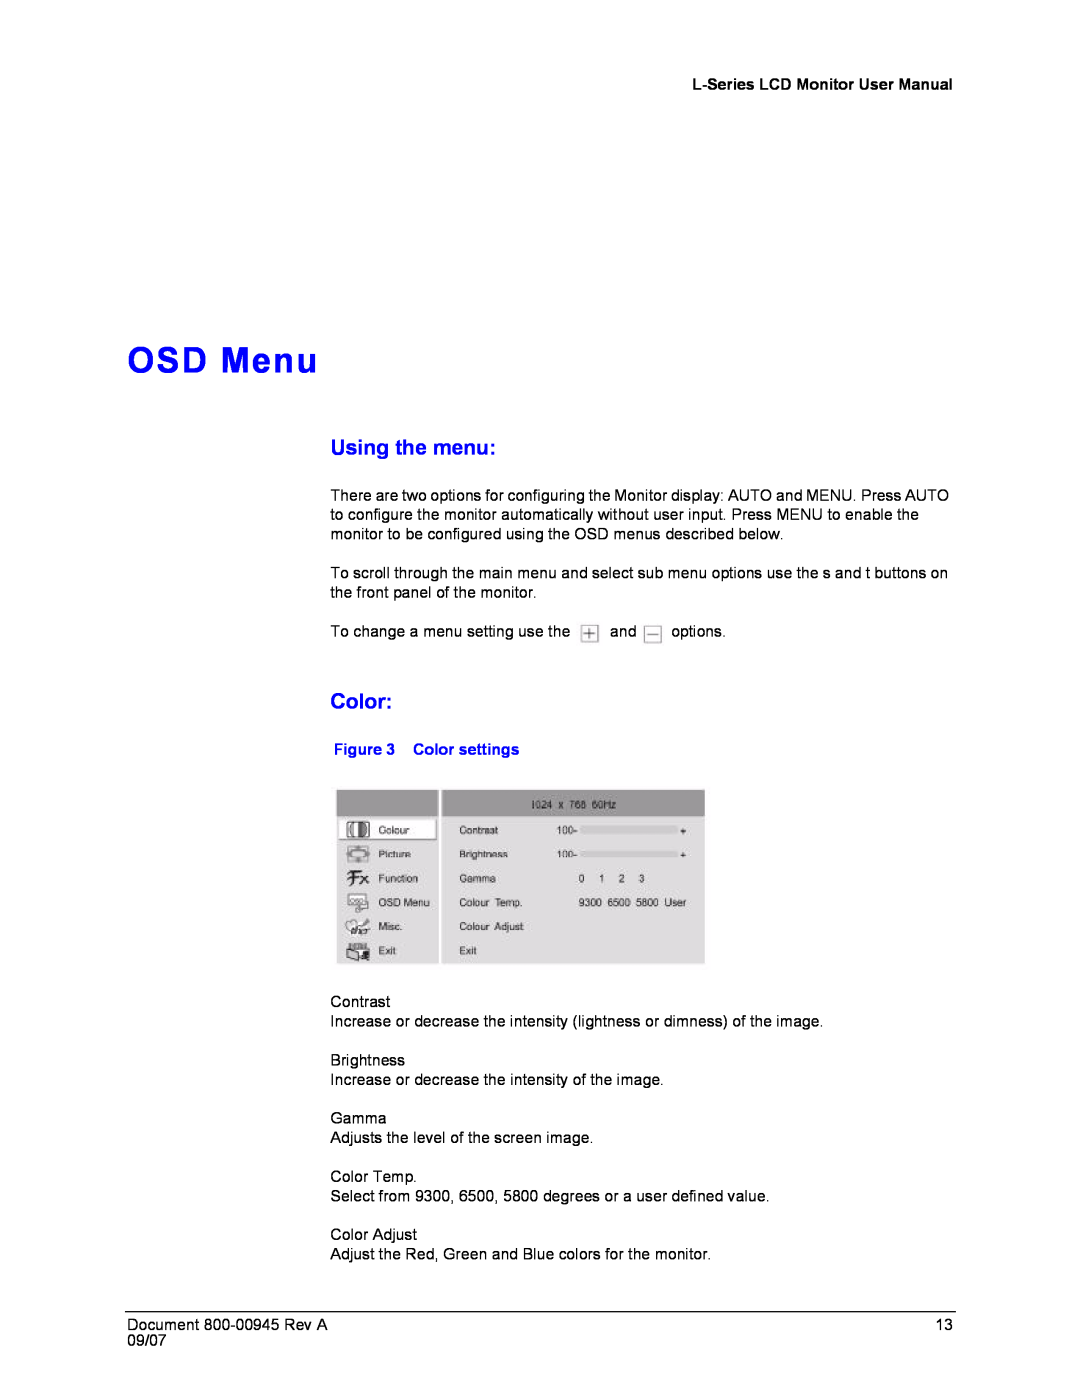 Honeywell HMLCD19L, HMLCD17L user manual OSD Menu, Using the menu, Color settings 